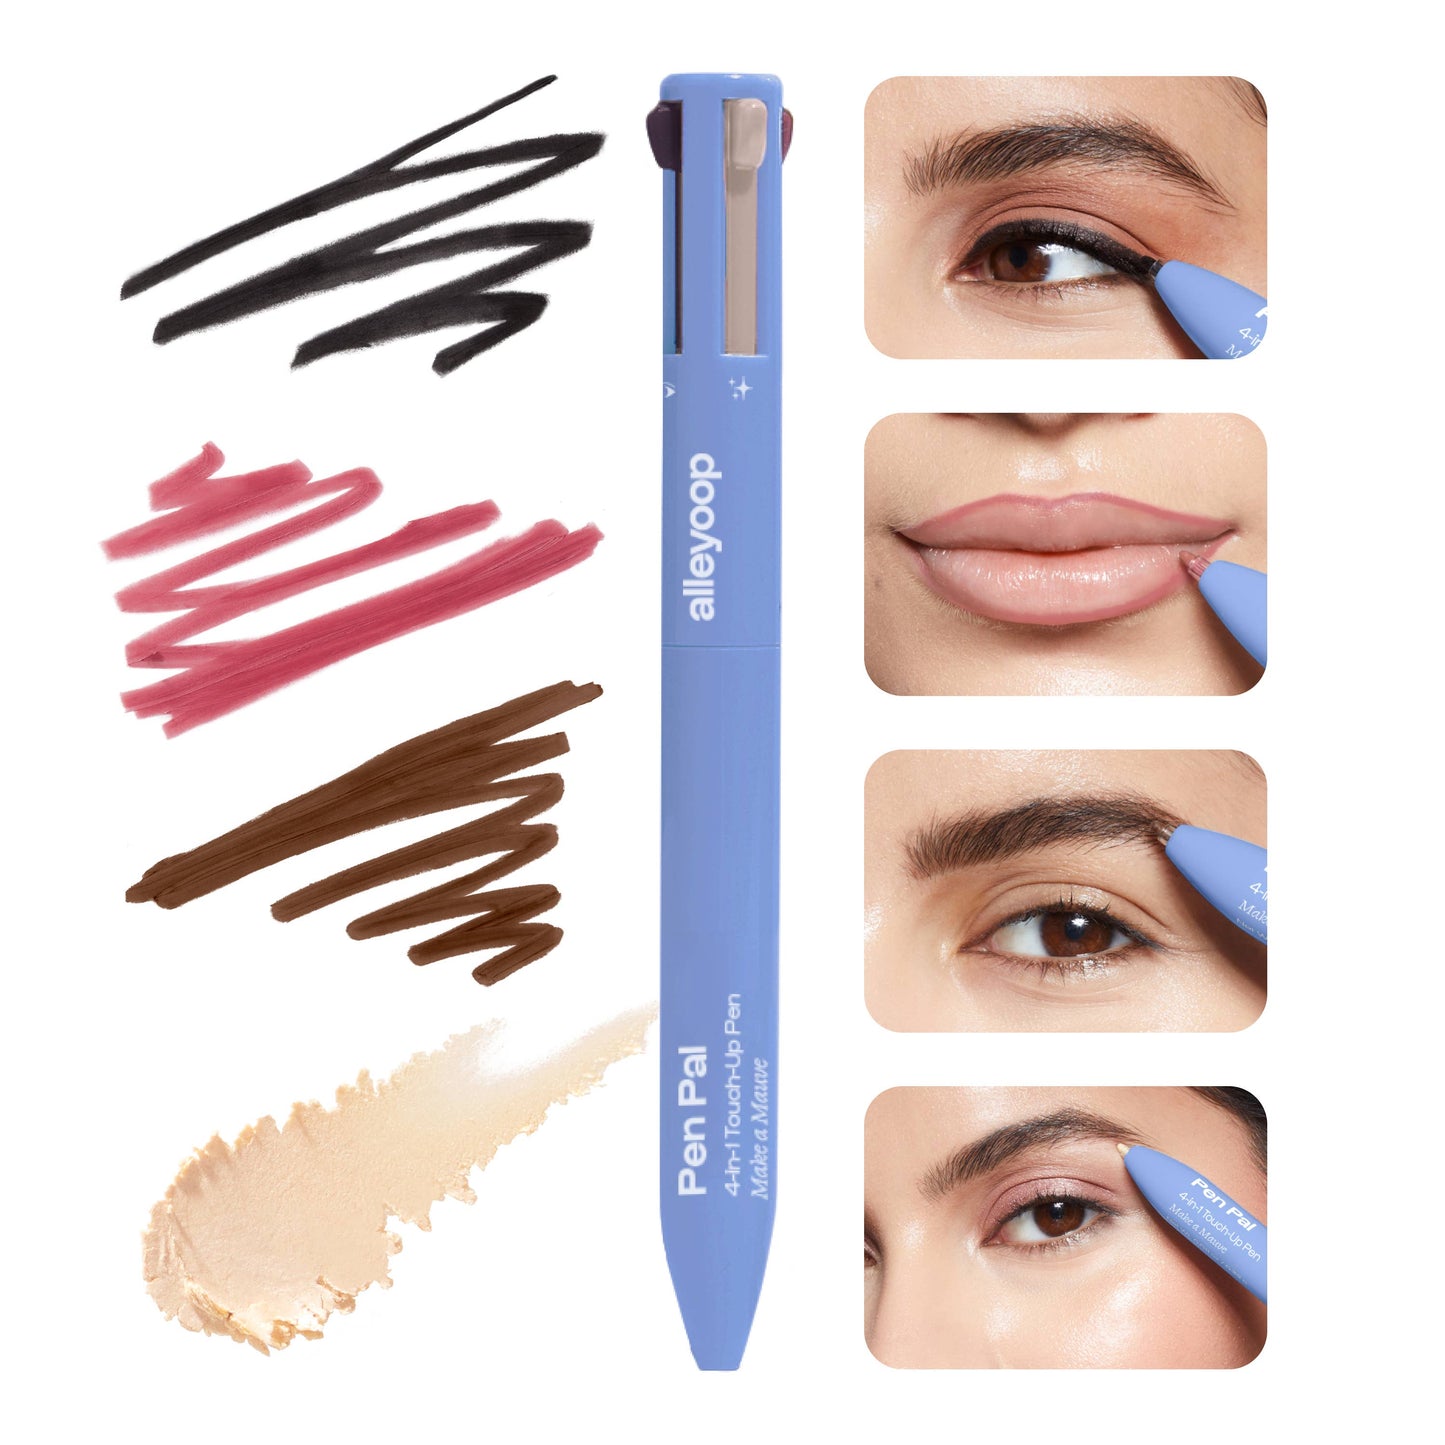 Alleyoop Pen Pal - 4-in-1 Makeup Touch Up Pen